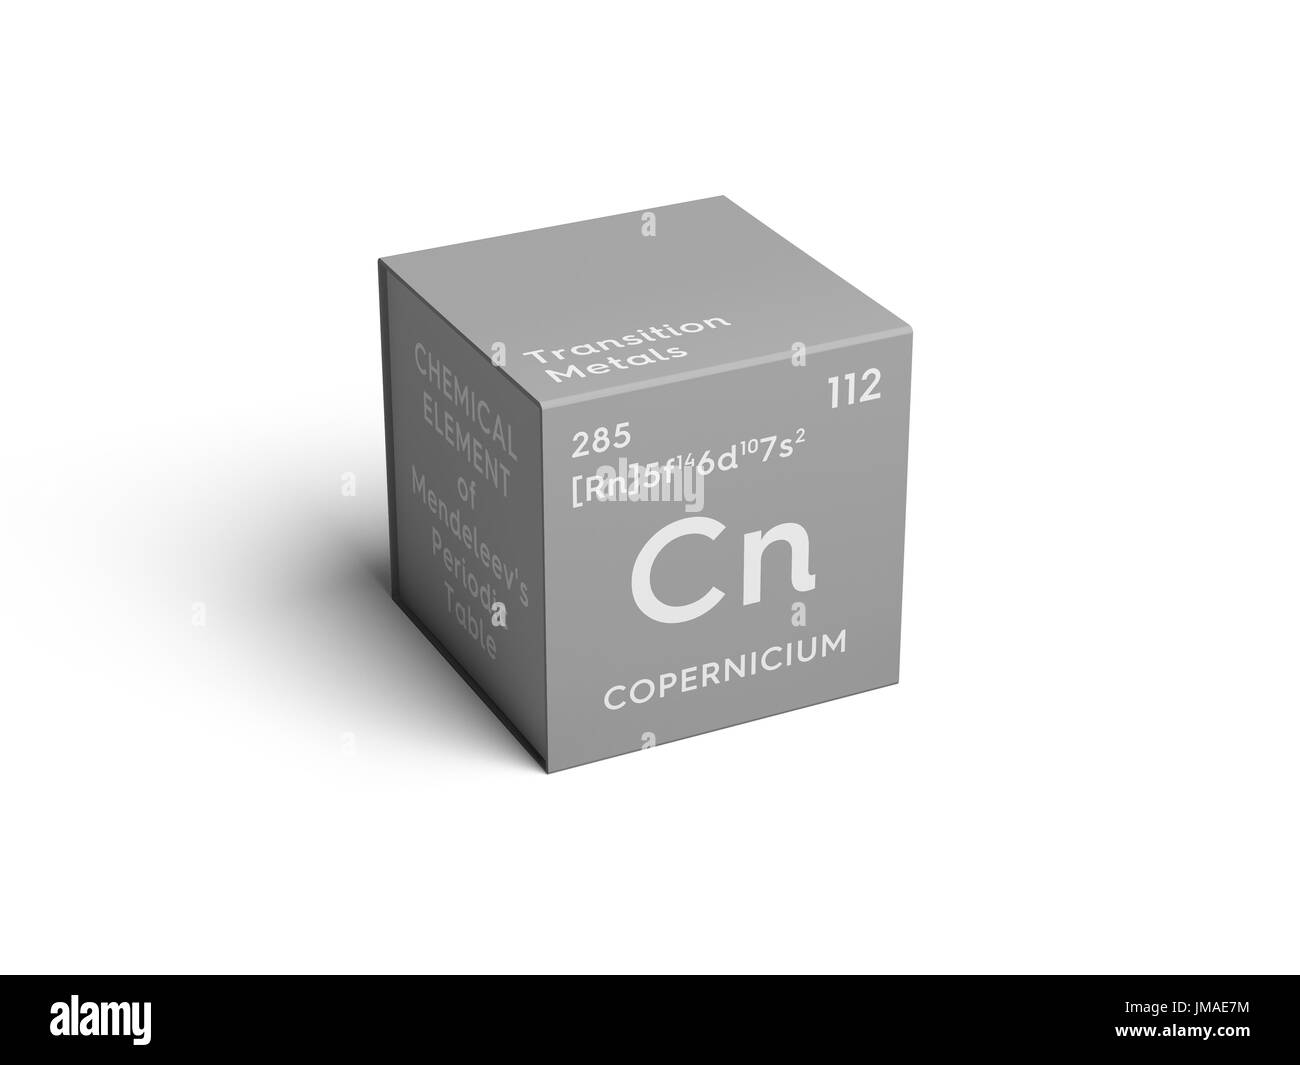 Copernicium. Transition metals. Chemical Element of Mendeleev's Periodic Table. Copernicium in square cube creative concept. Stock Photo